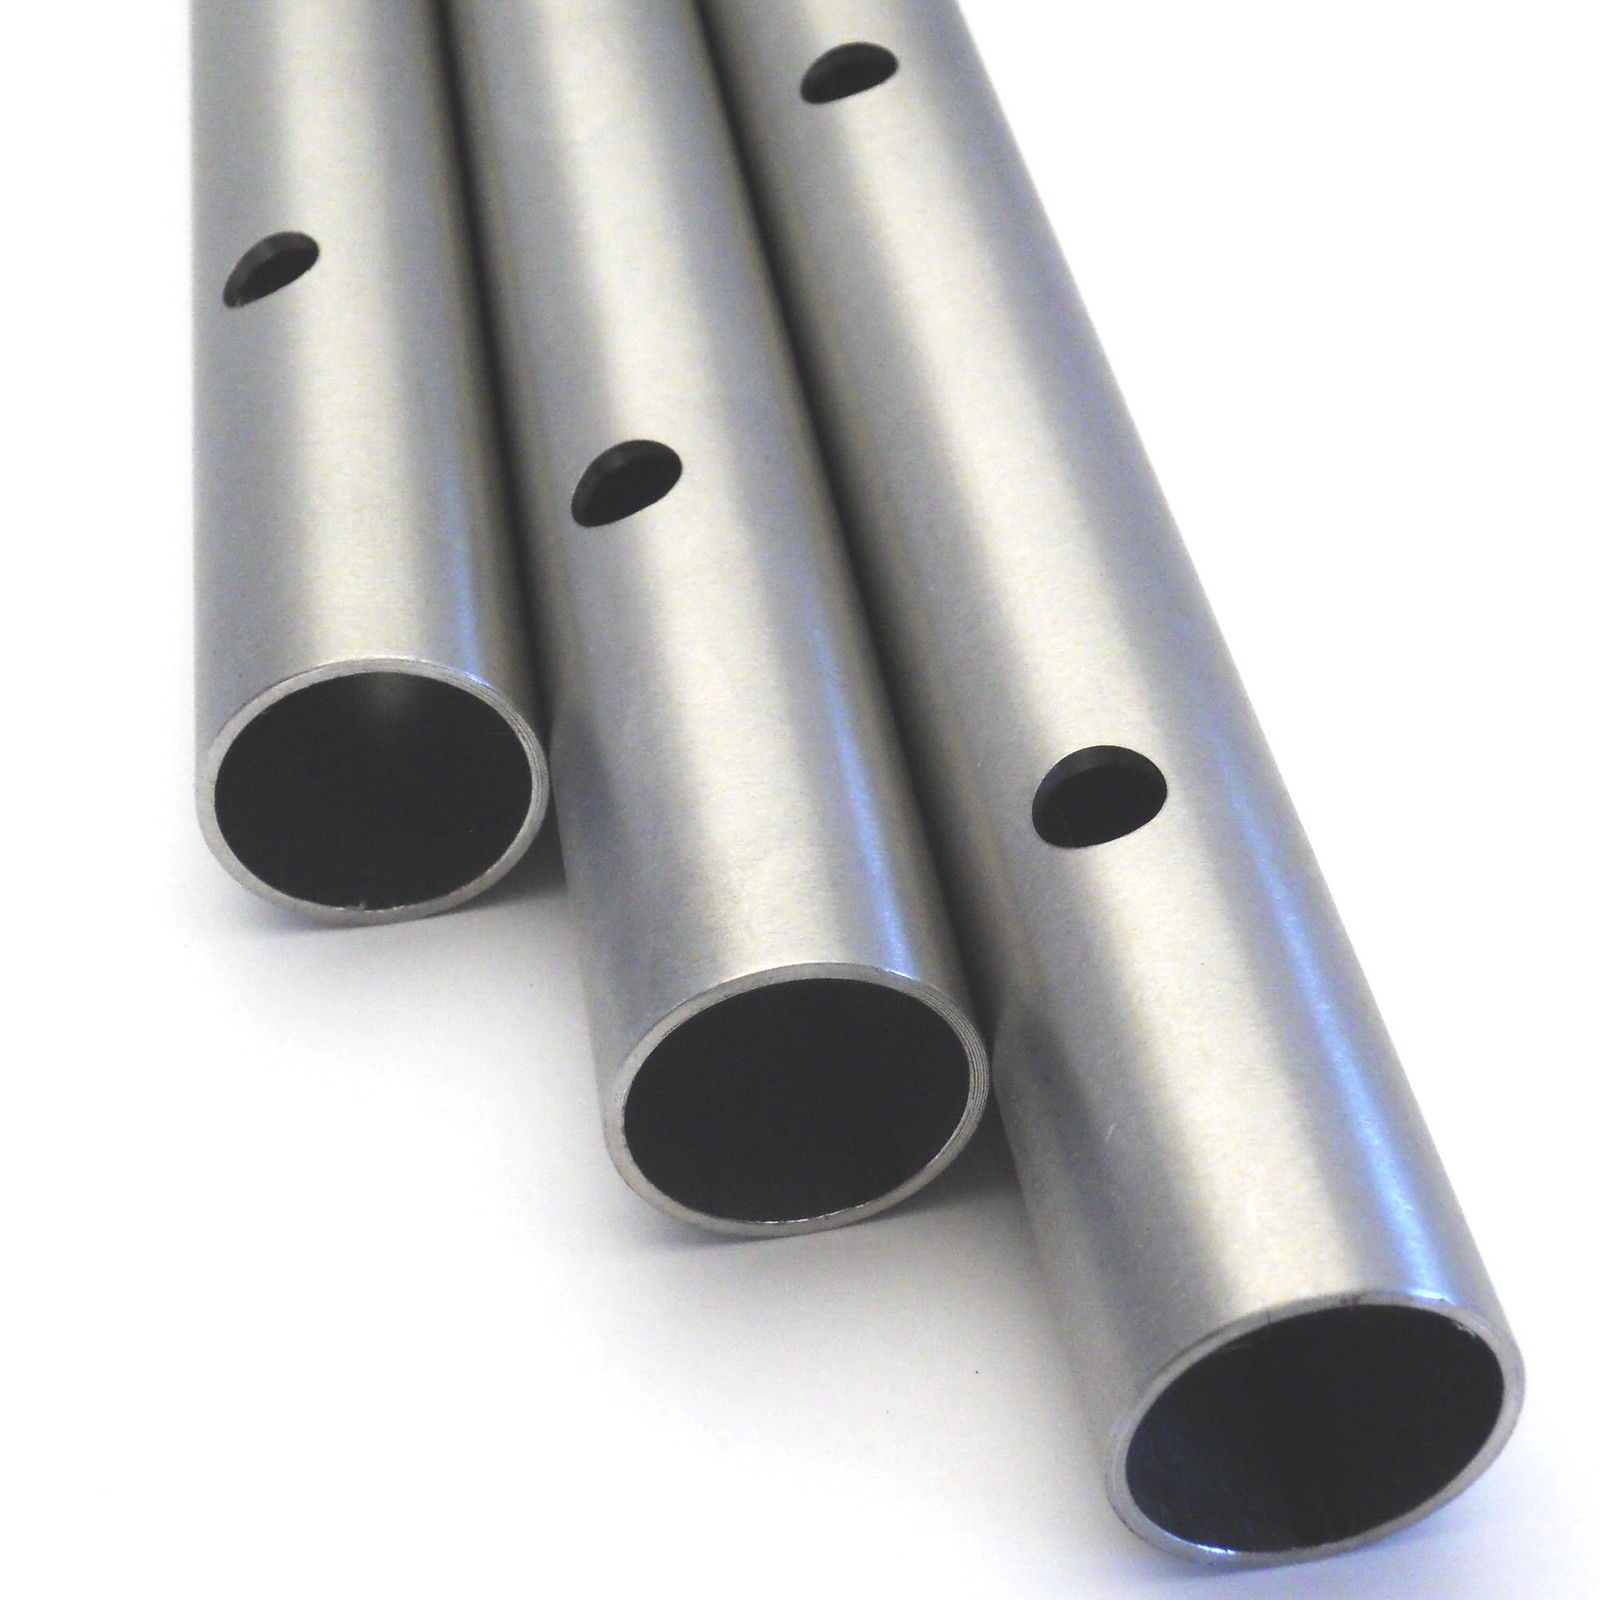 1 Stück 30cm Edelstahl-Rohr AD-Ø 30mm poliert & gebördelt V2A rostfrei  Edelstahlrohr | AUSWAHL 1-10 Stück & 6-200 mm Außen-Durchmesser | Schlauch